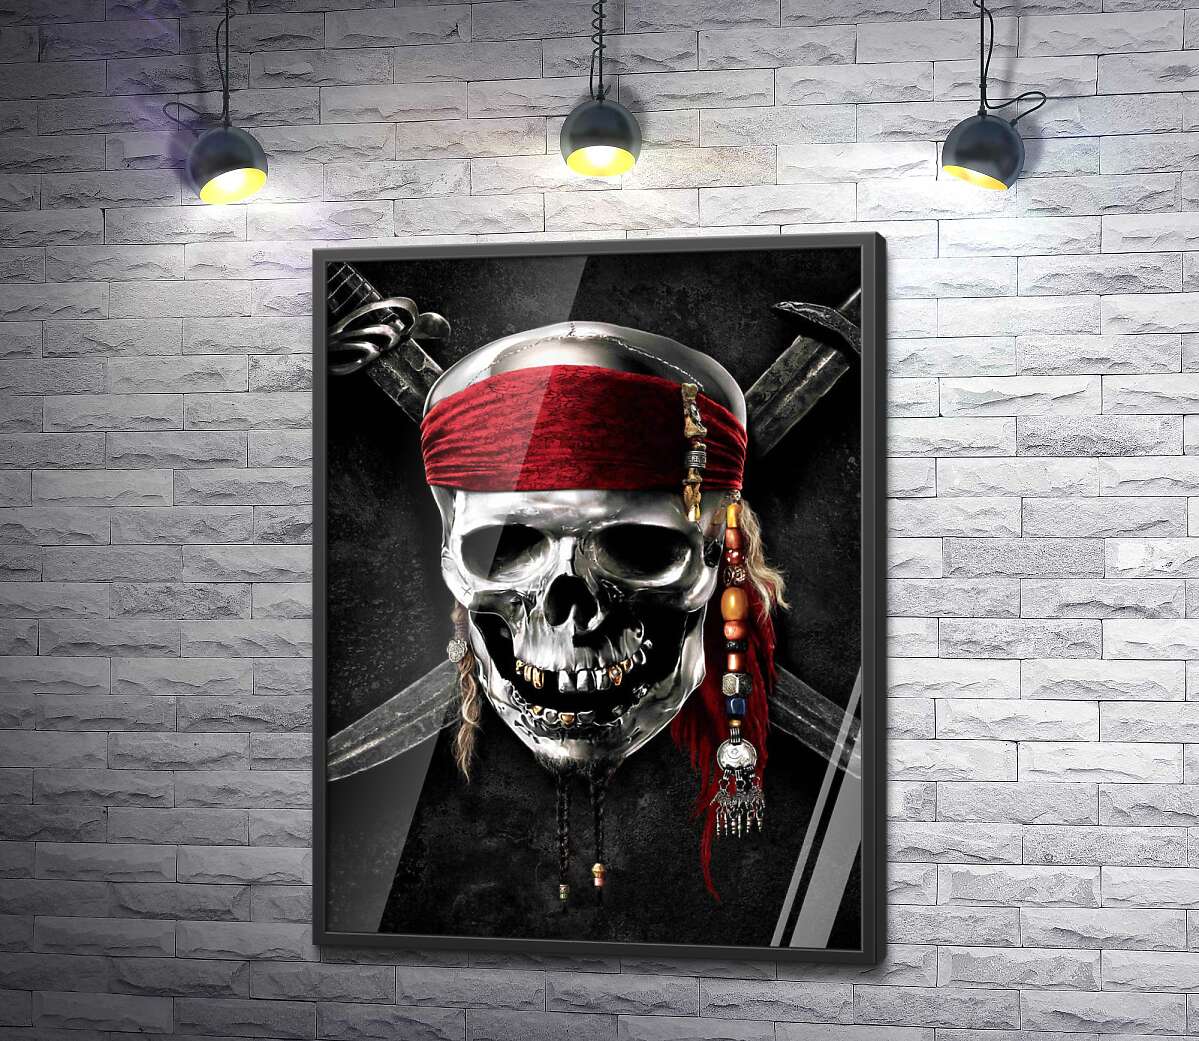 постер Славнозвісний череп Джека Горобця (Jack Sparrow) на постері до фільму "Пірати Карибського моря" (Pirates of the Caribbean)